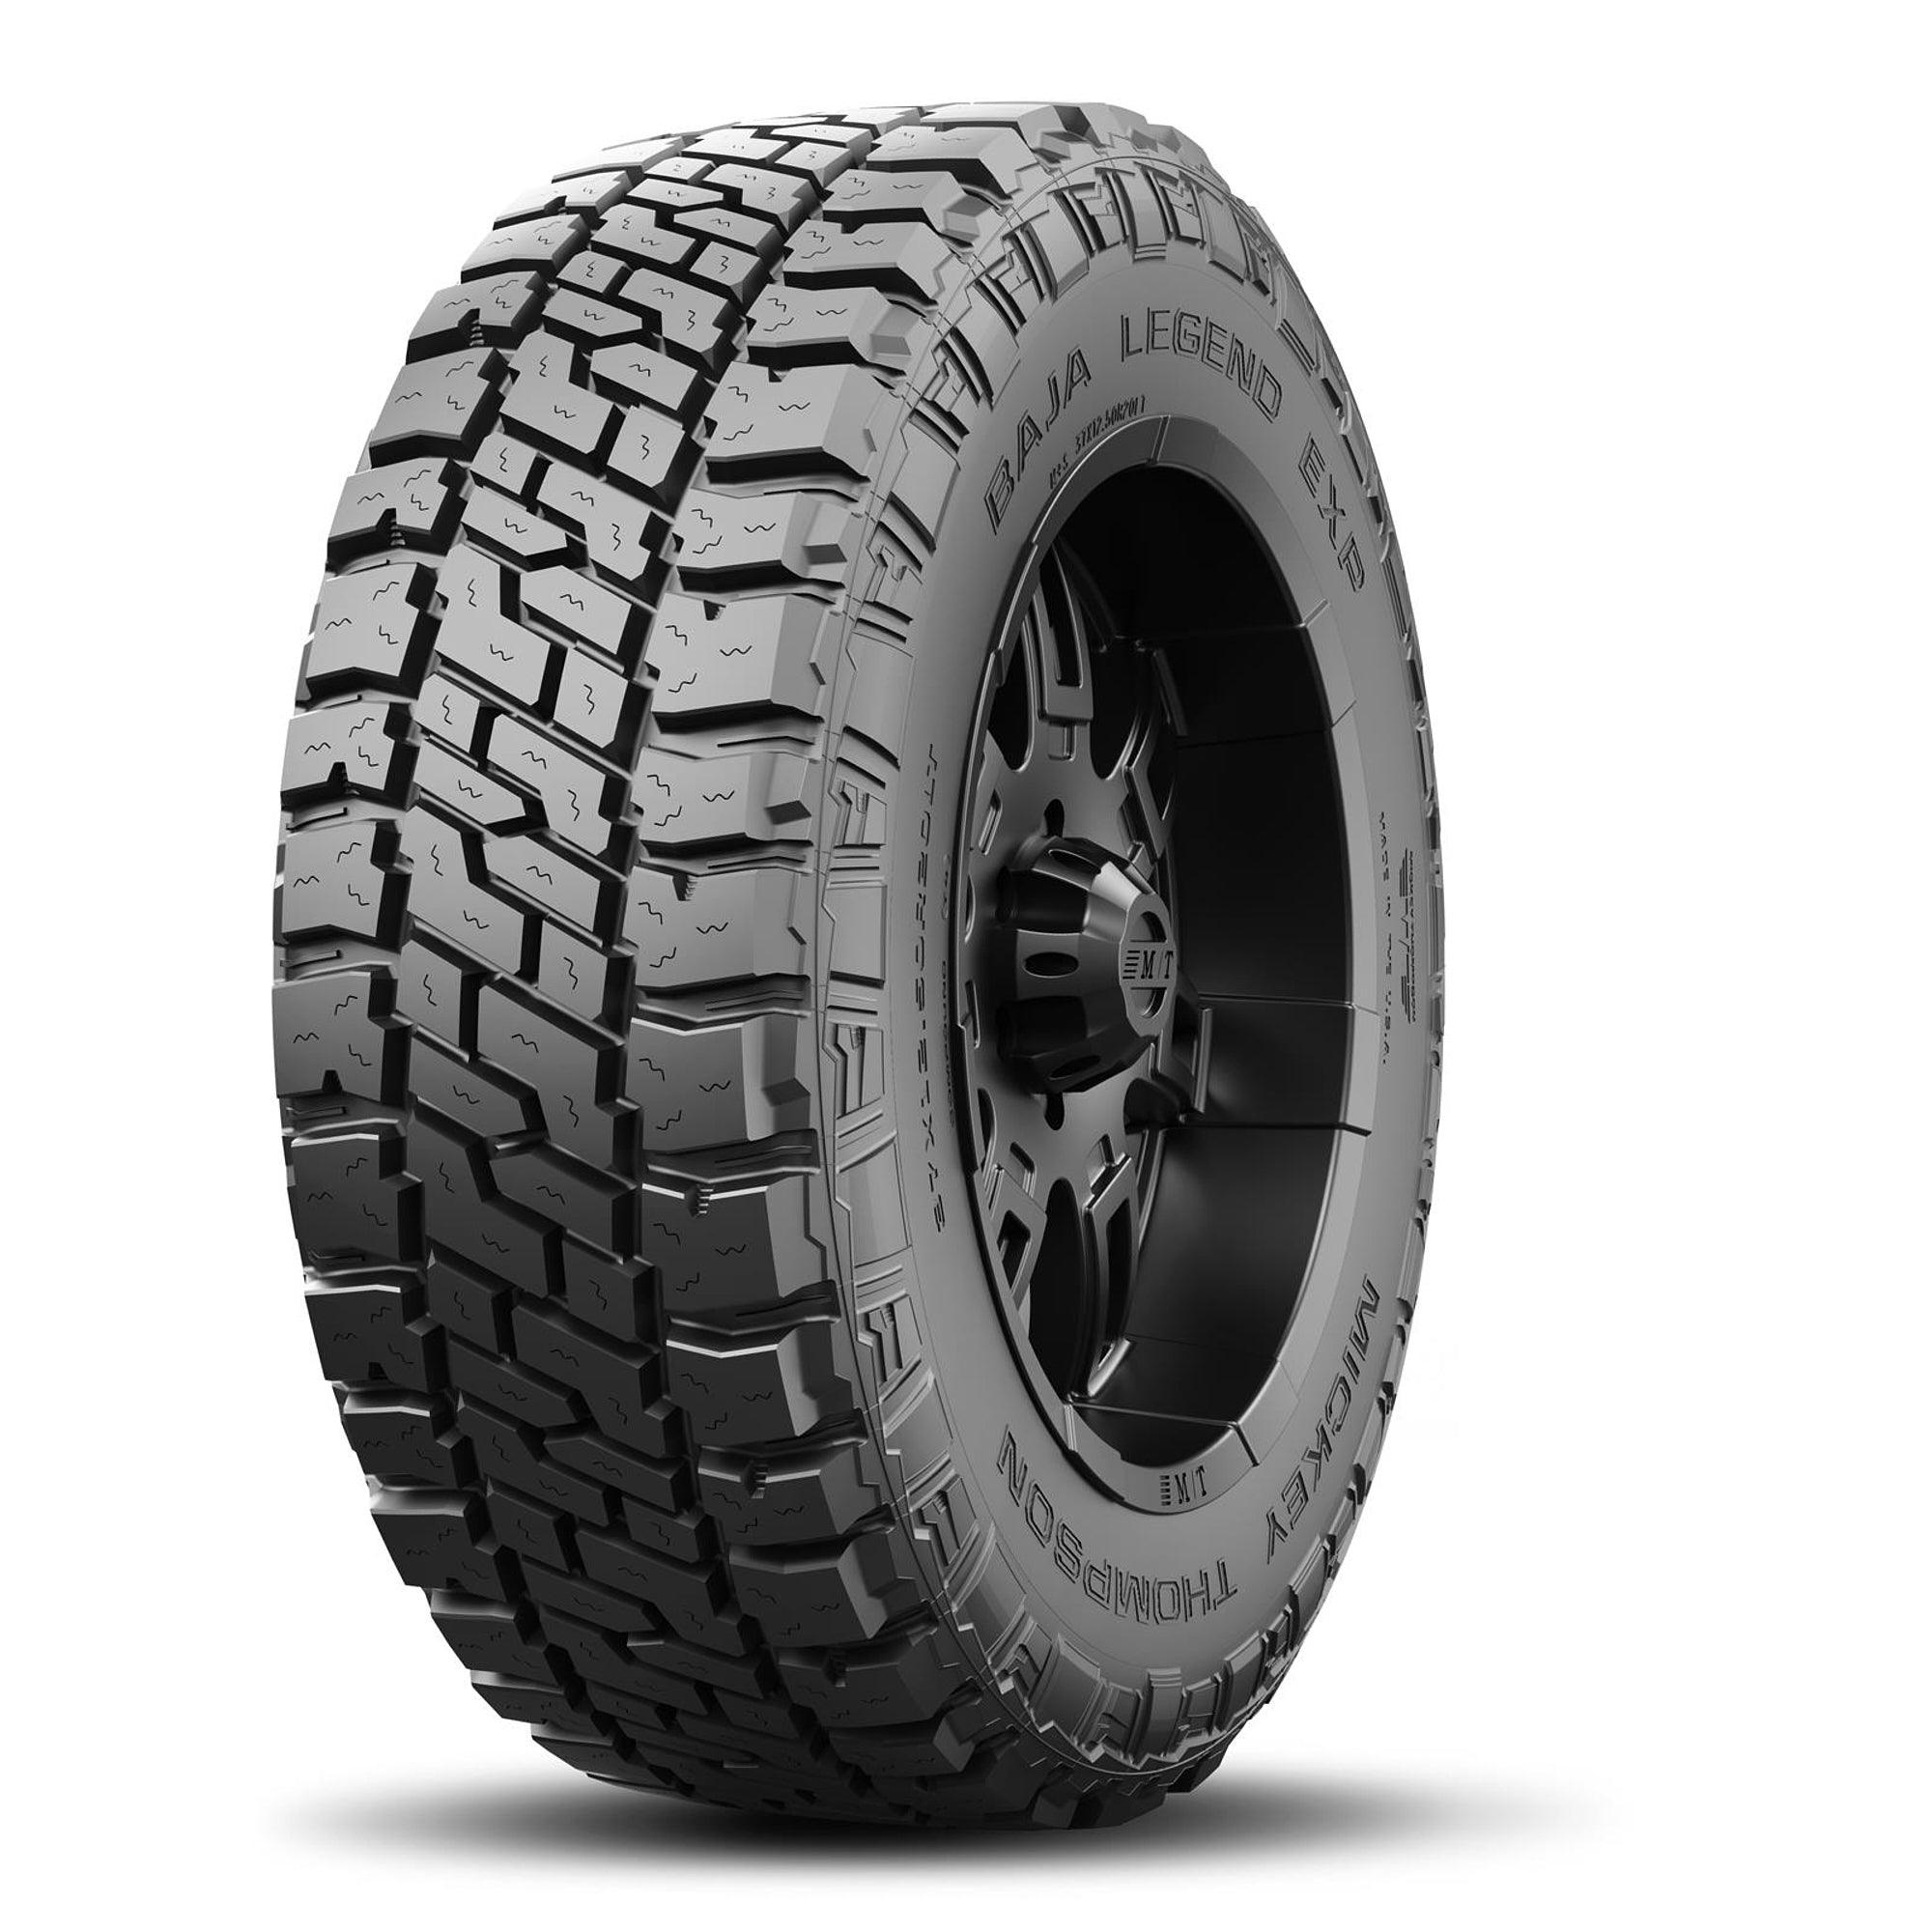 Baja Legend EXP Tire LT275/60R20 123/120Q - Burlile Performance Products